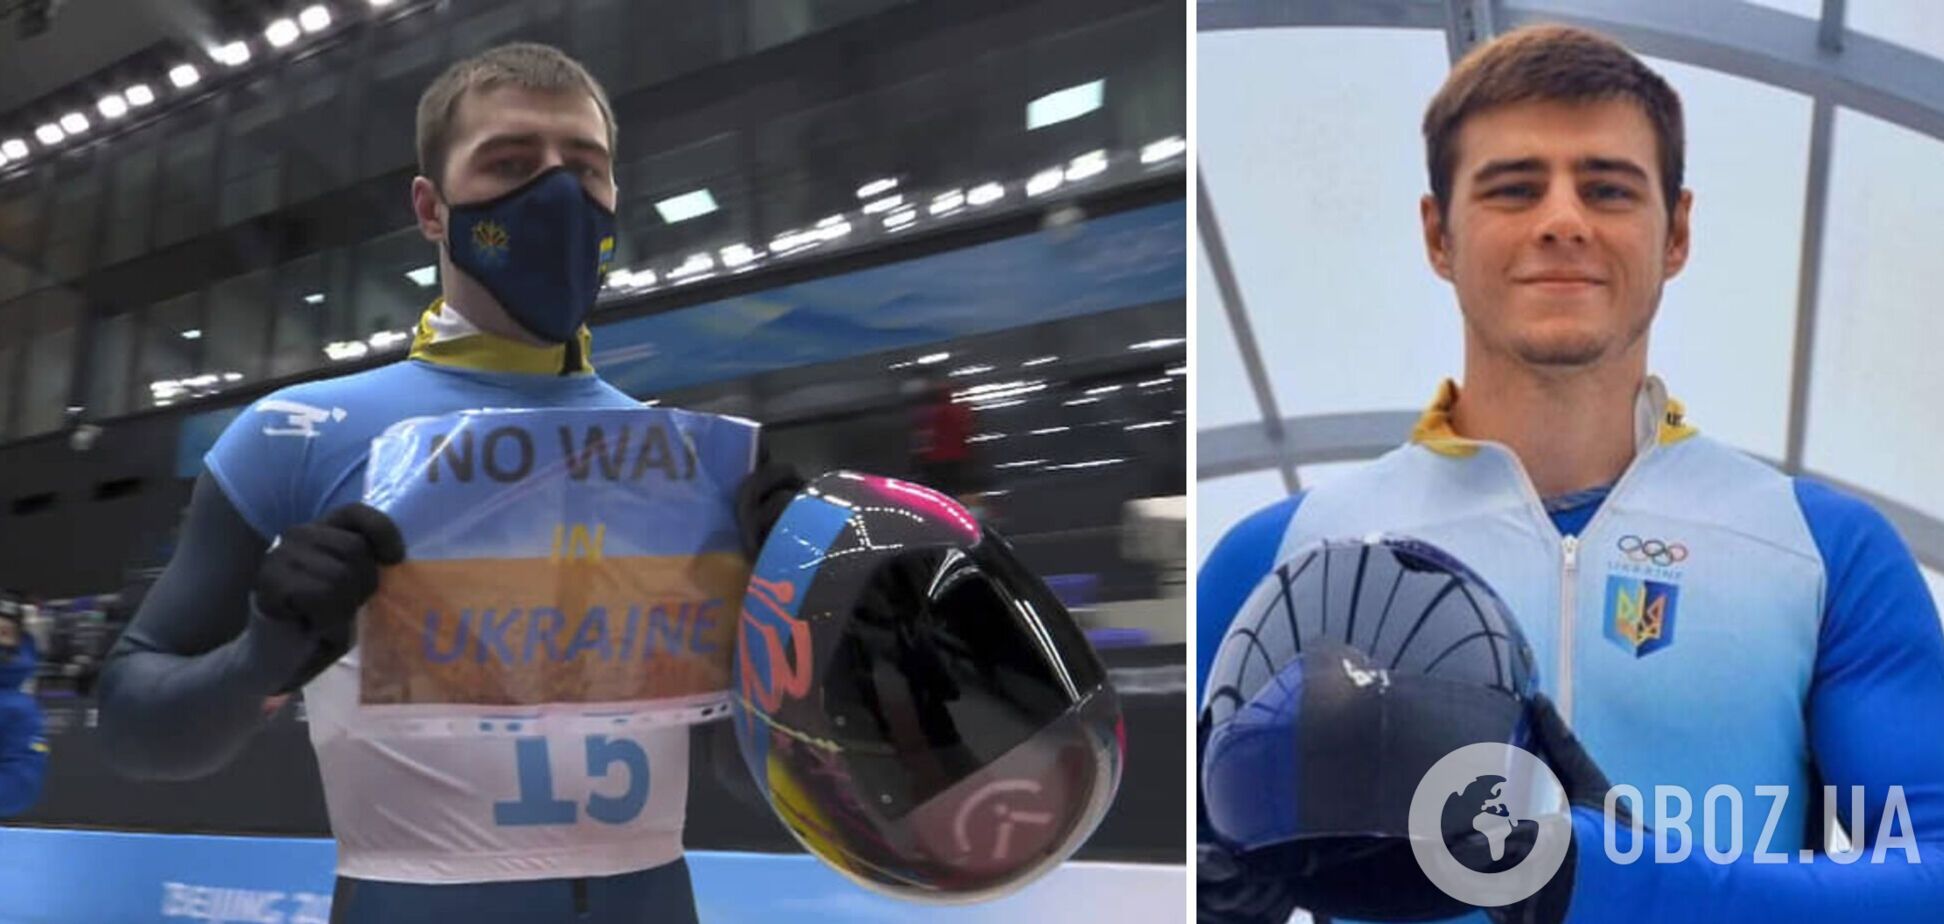 'Нет войне в Украине'. Украинский спортсмен – мой личный герой! Вы согласны?